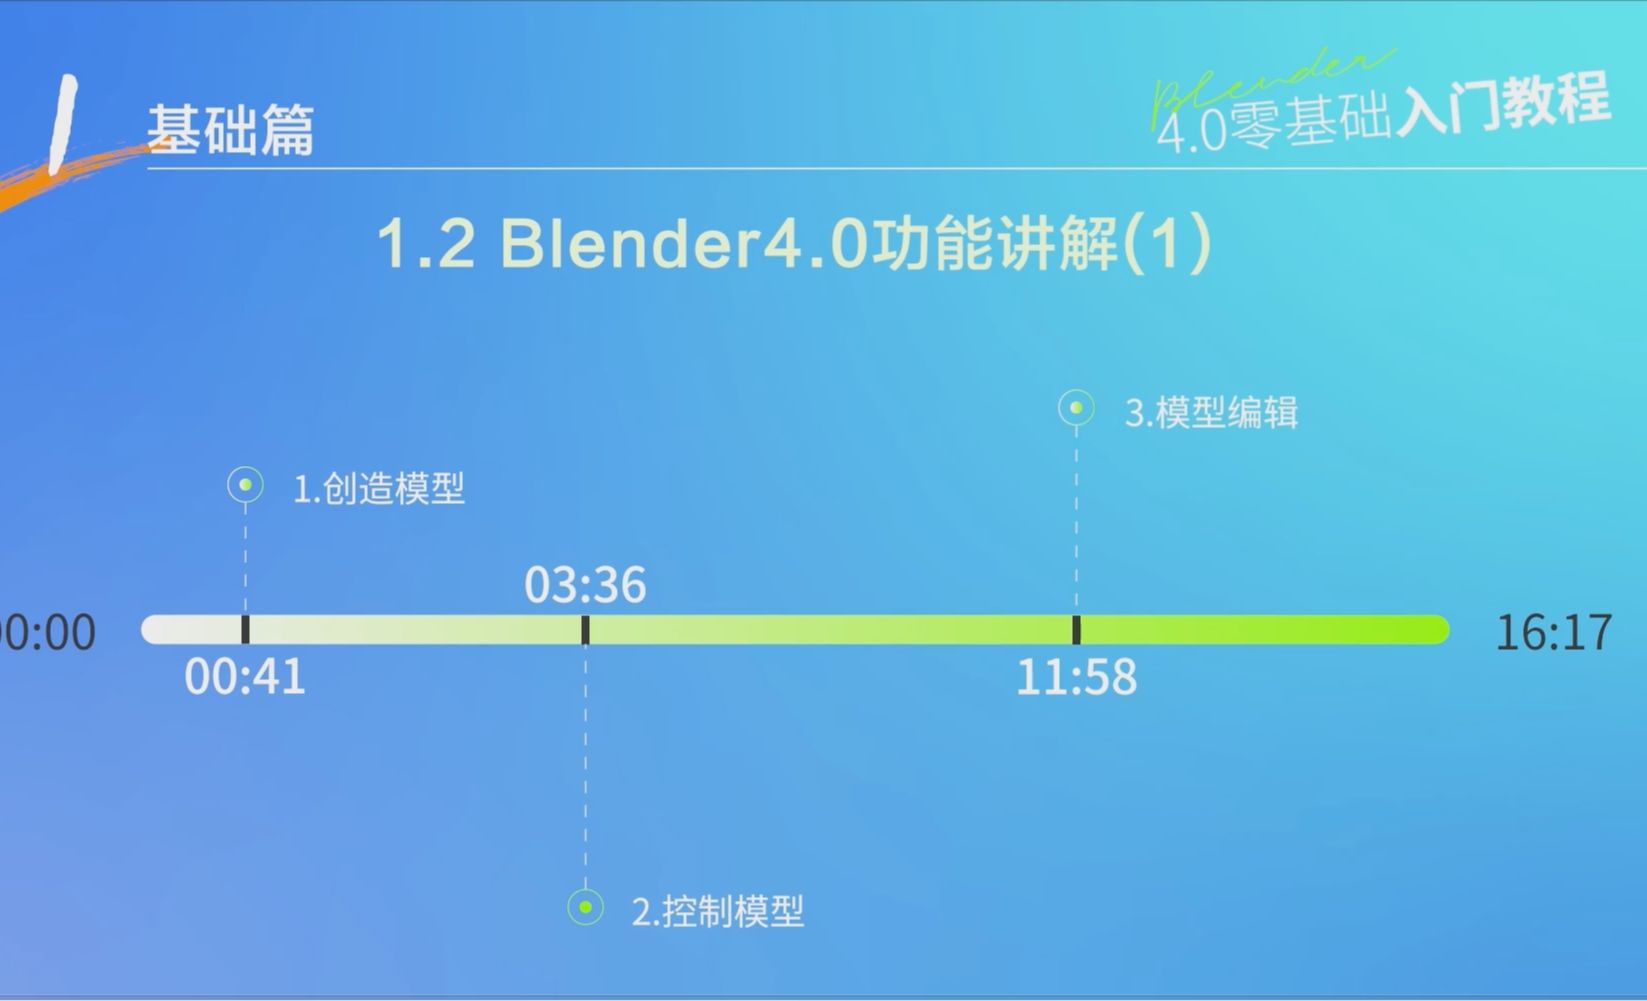 【基础篇】1.2 Blender4.0功能讲解（1）